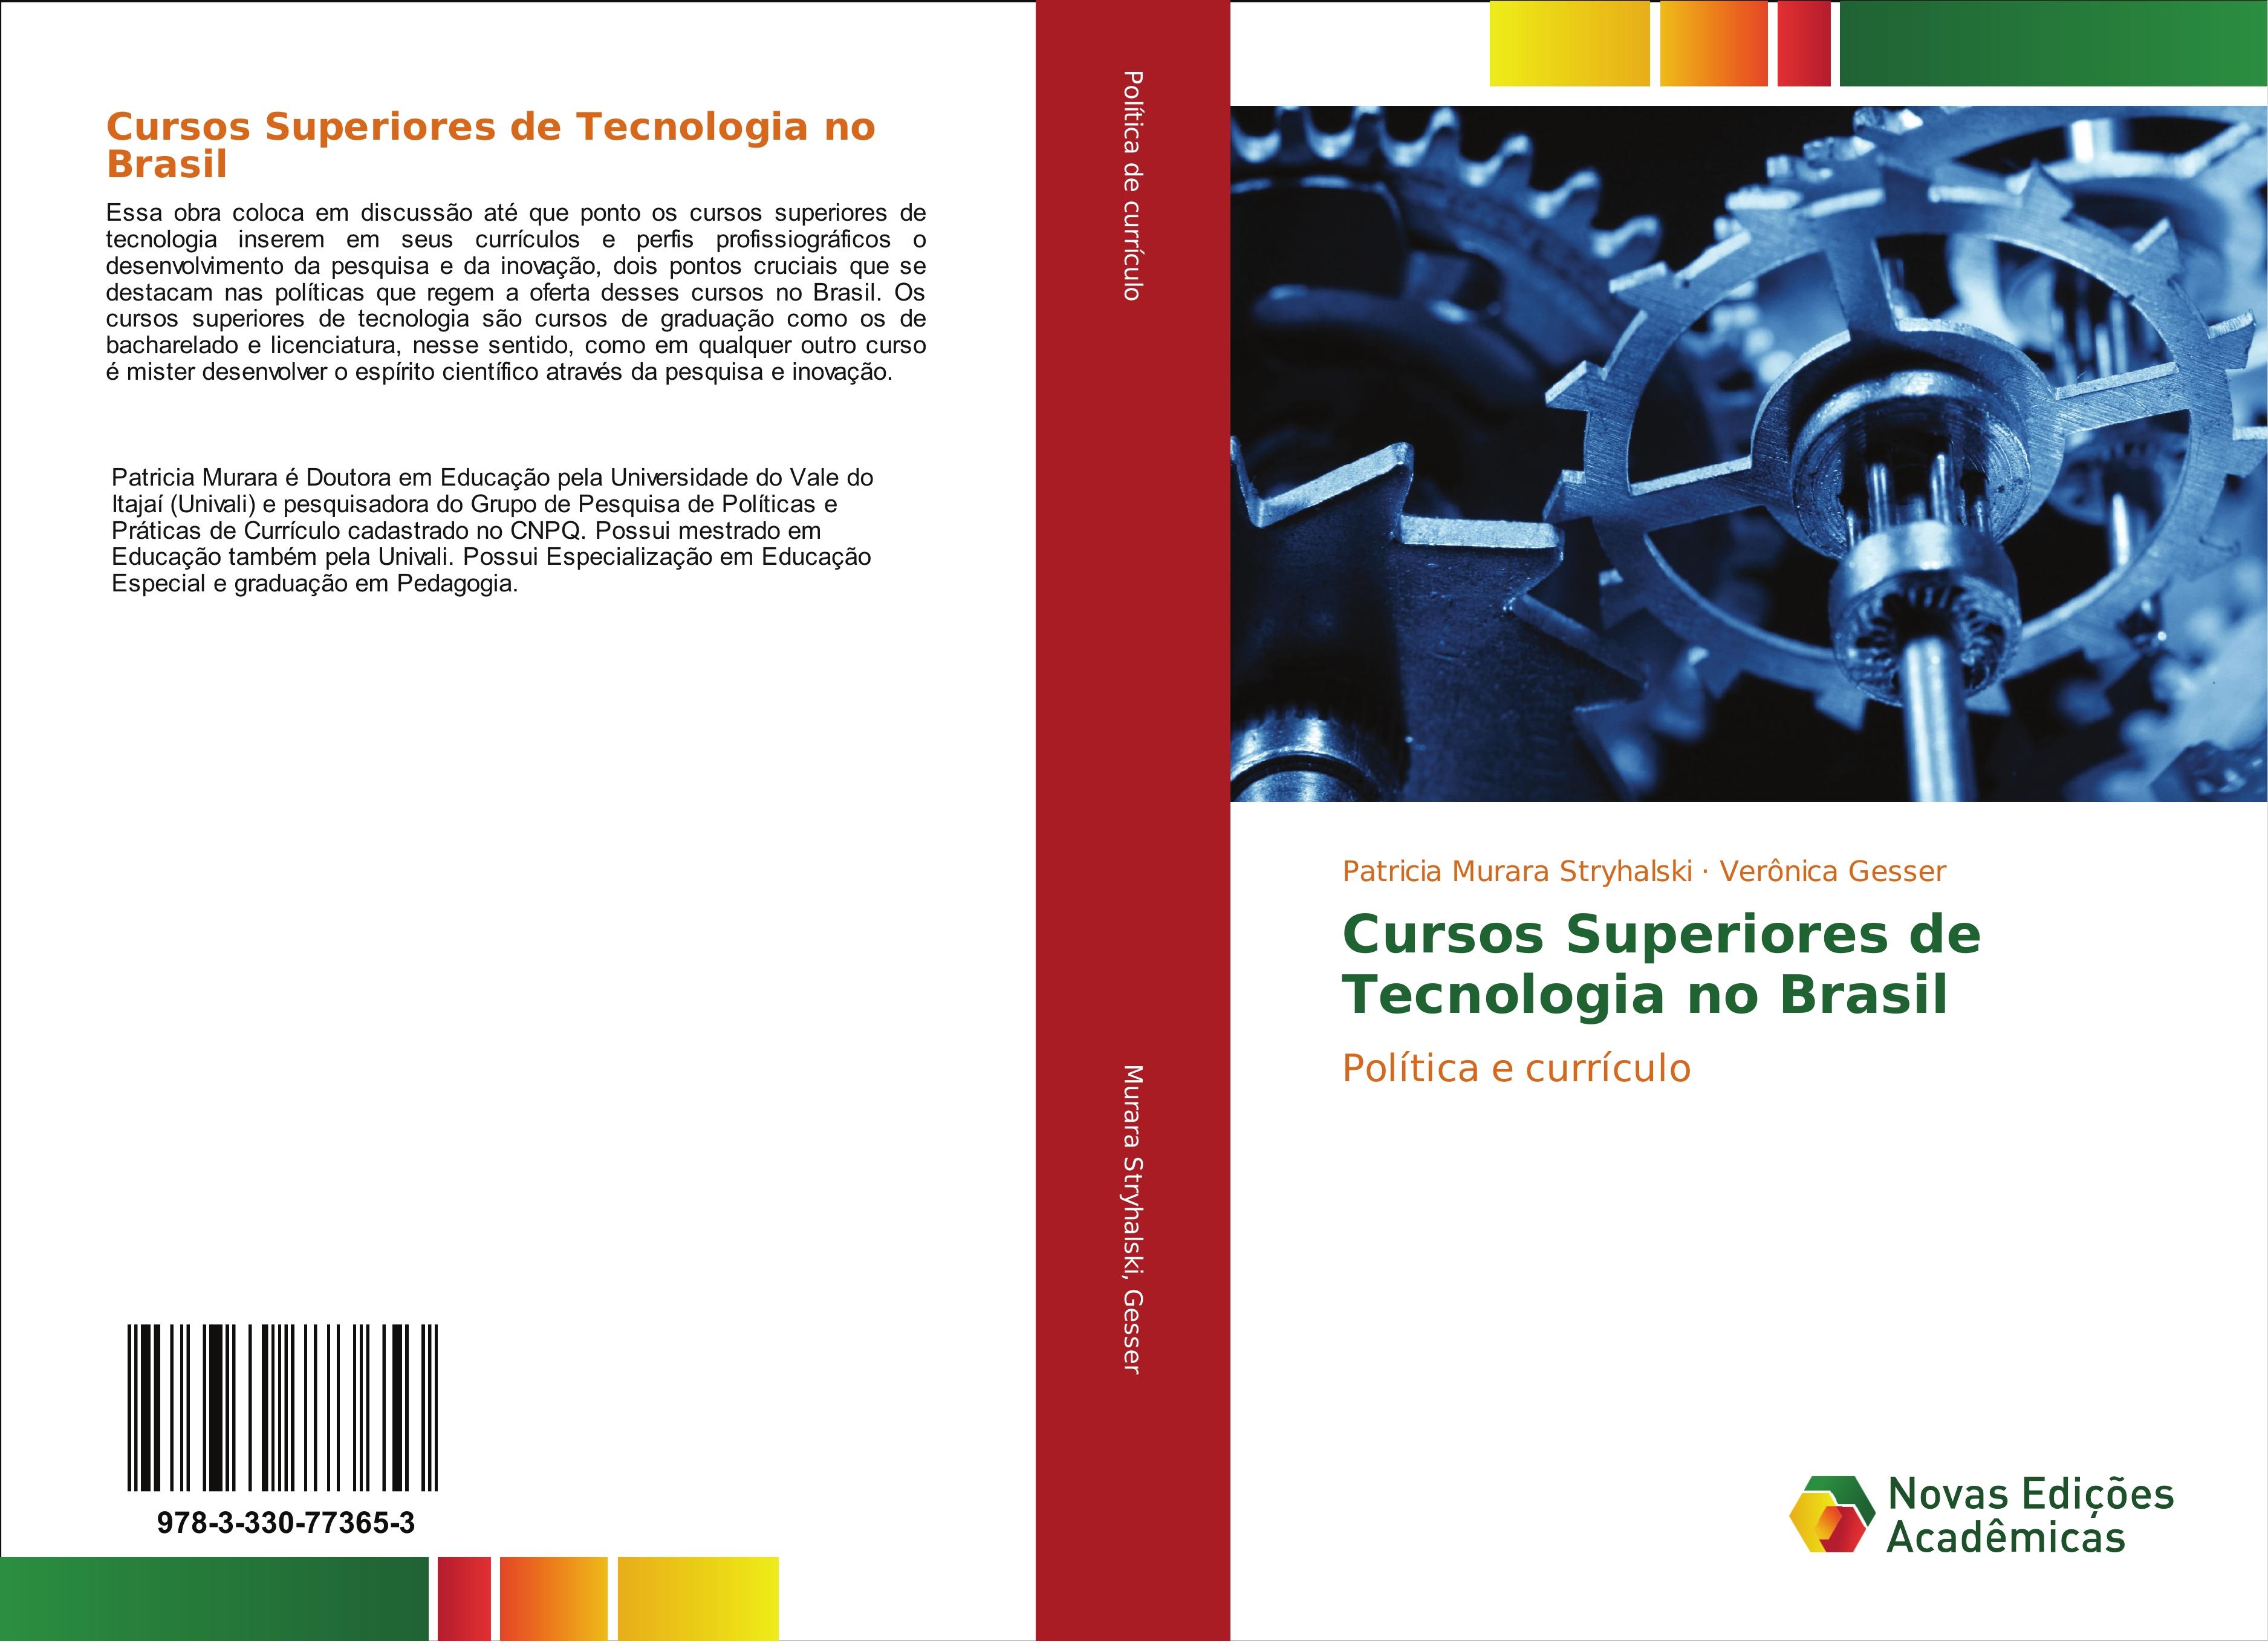 Cursos Superiores de Tecnologia no Brasil - Patricia Murara Stryhalski Verônica Gesser